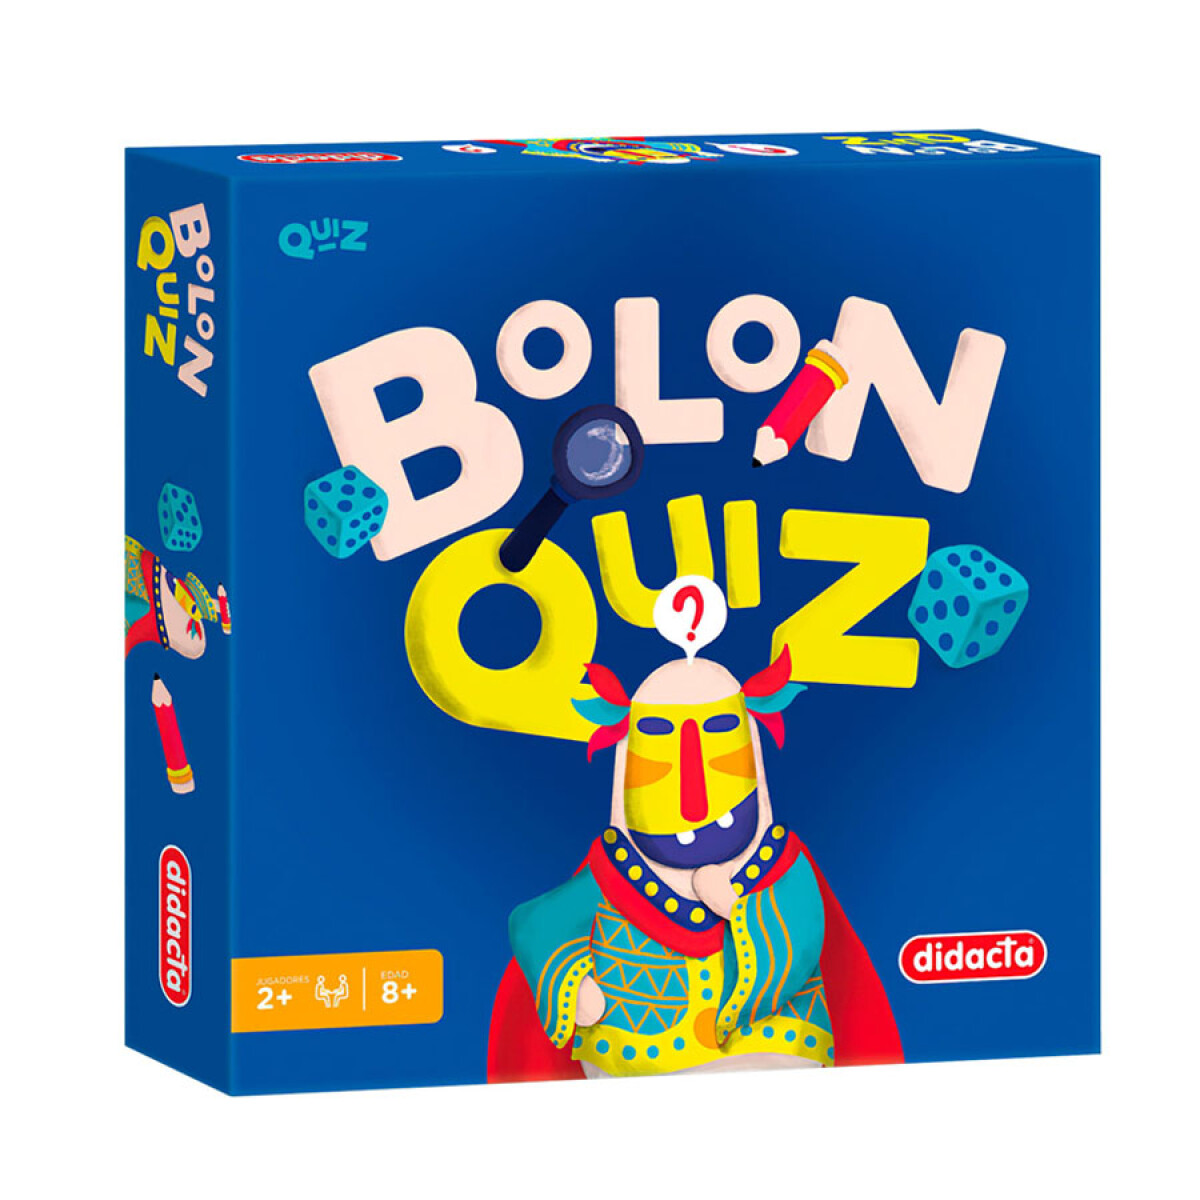 Bolon Quiz [Español] 